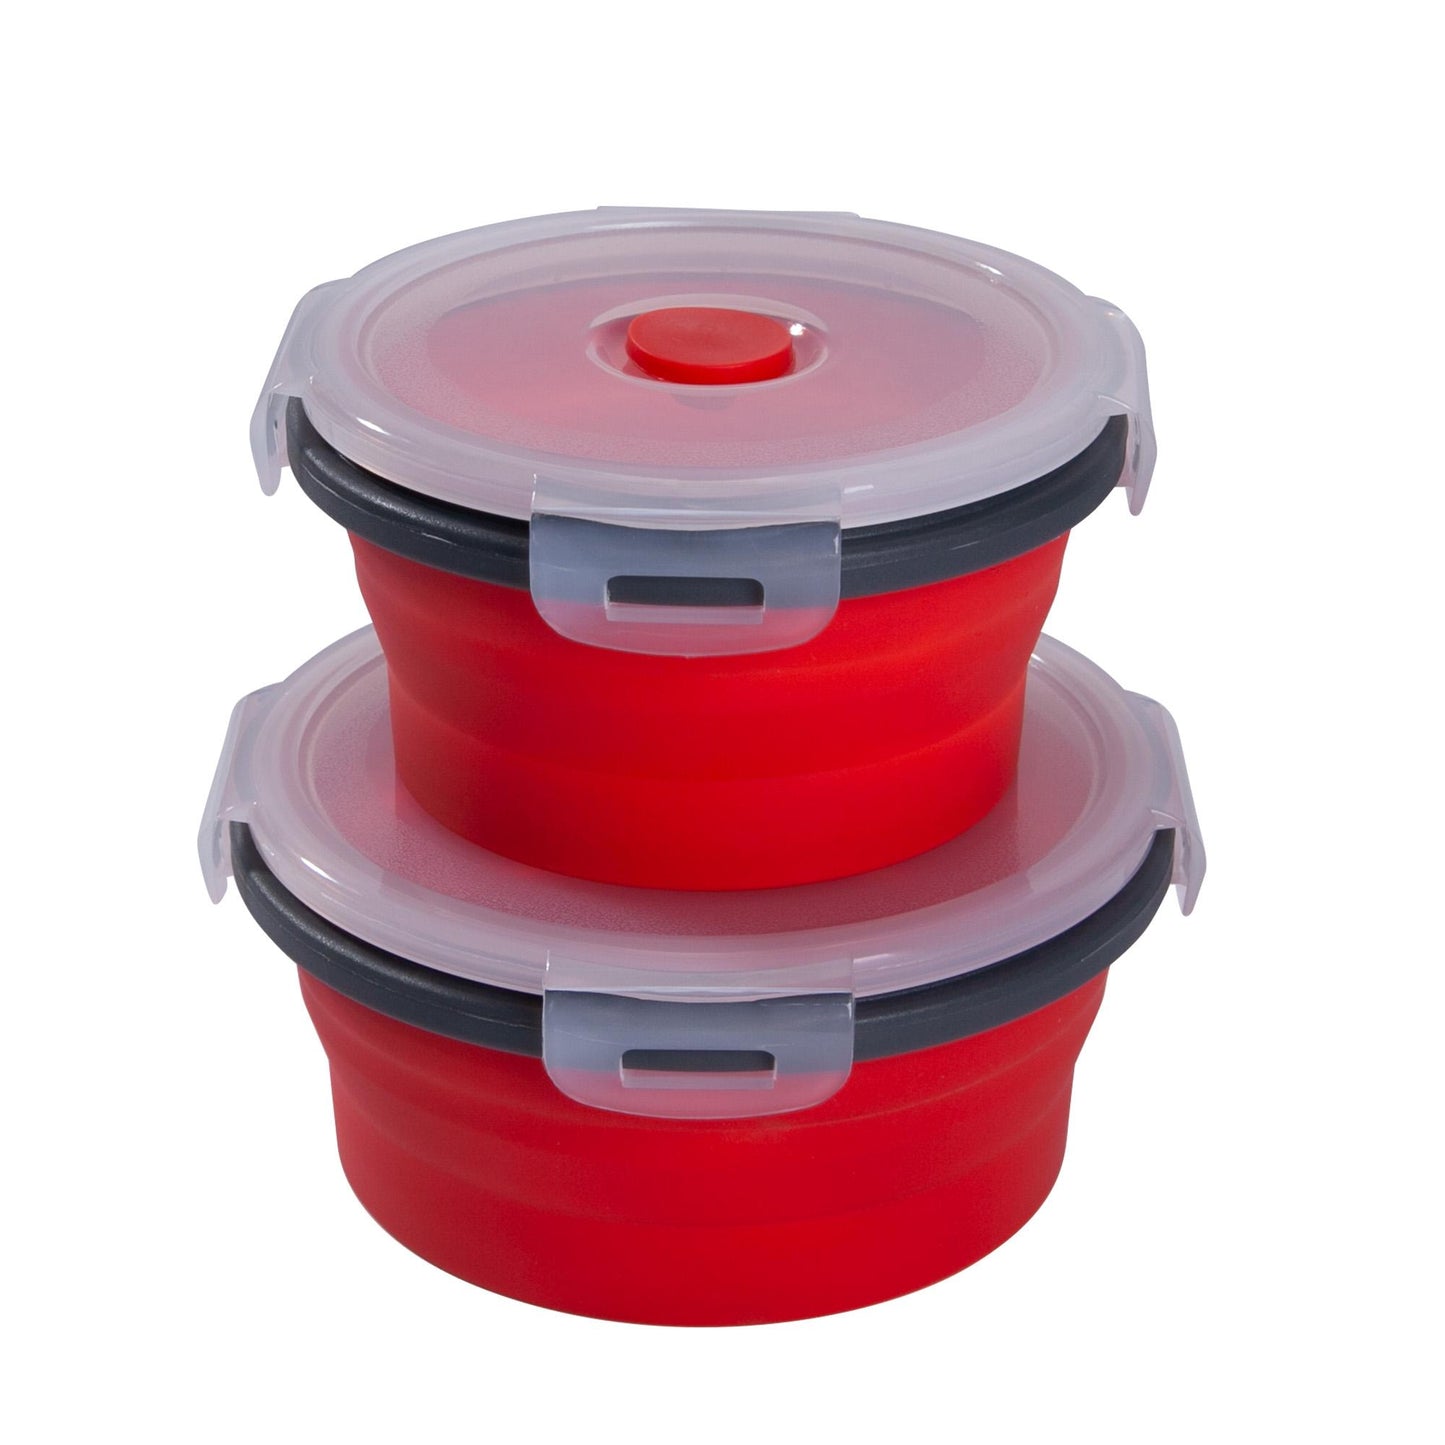 mixcover Freshlocks plegables con tapa hecha de silicona Bentobox Lorzon Box Box Picnick Camping Bowl Bpa Space sin espacio para guardar 250 ml 500 ml de rojo